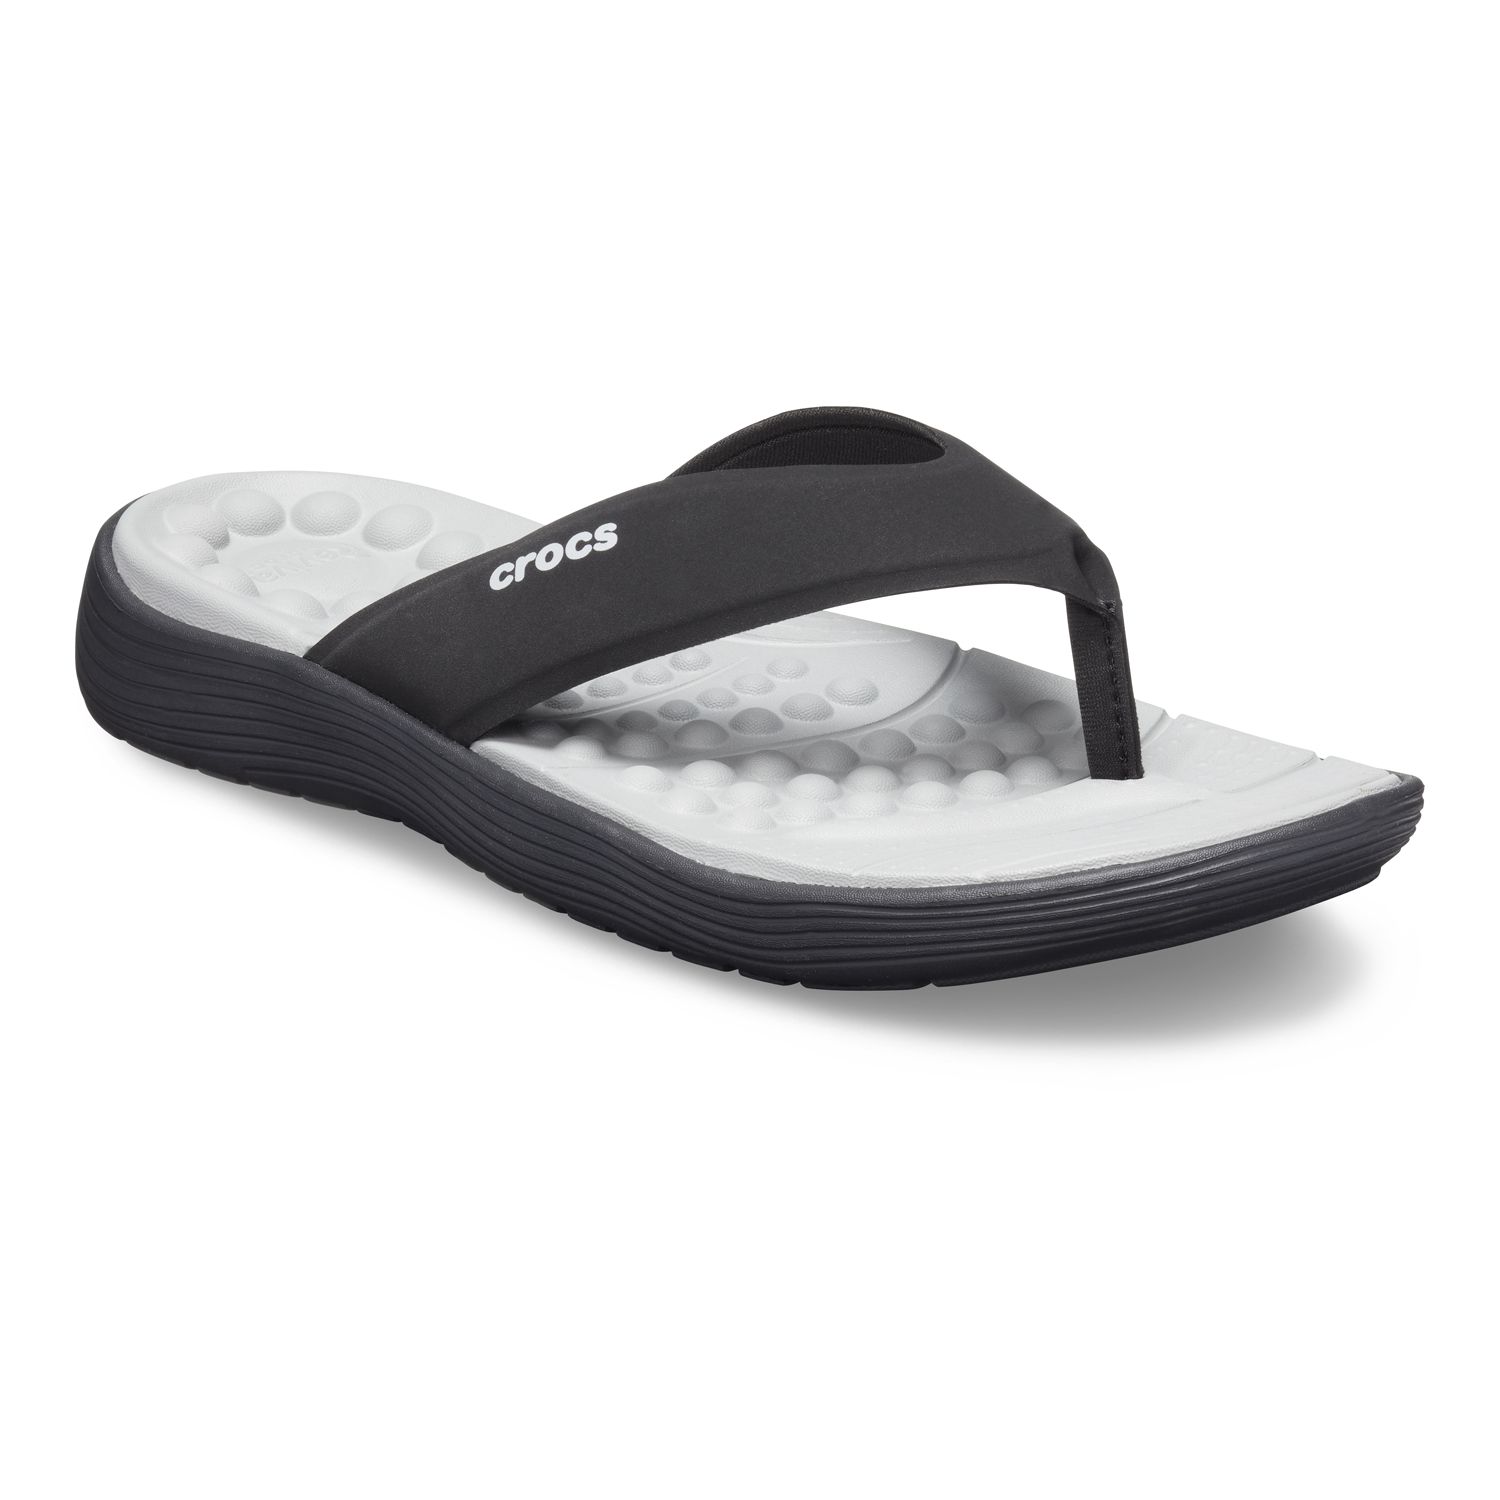 Crocs Reviva Men's Flip Flop Sandals